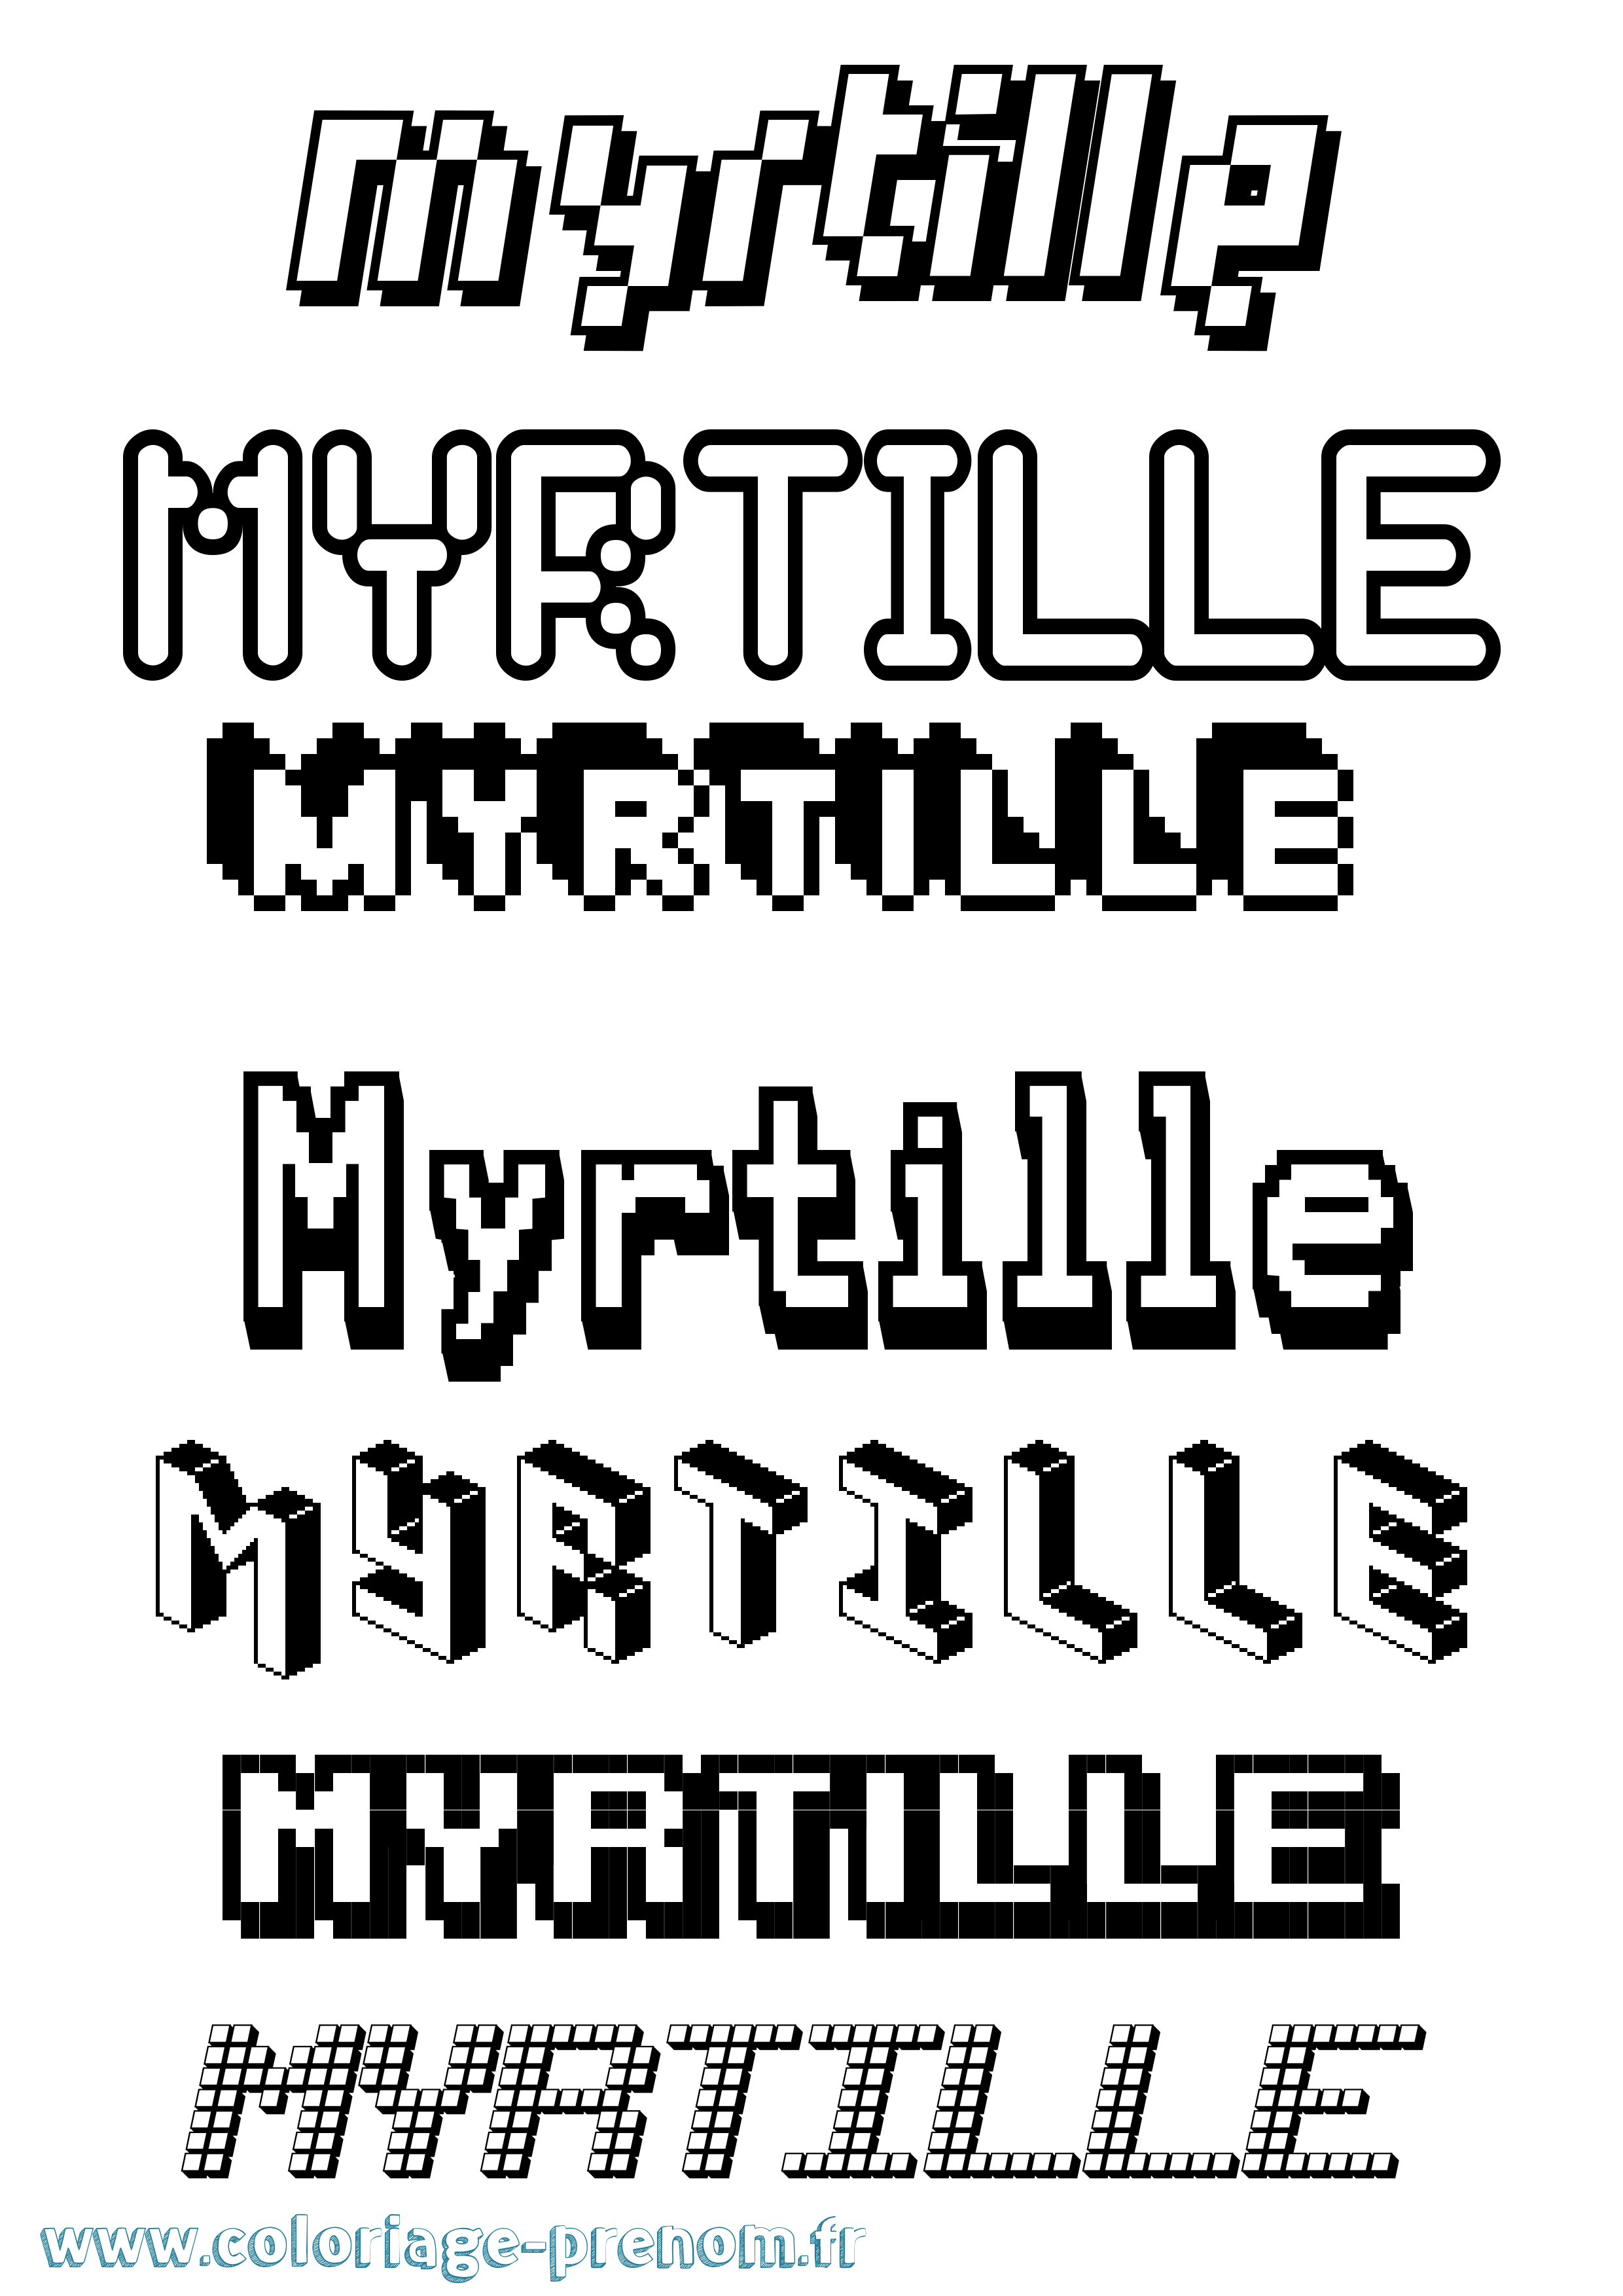 Coloriage prénom Myrtille Pixel